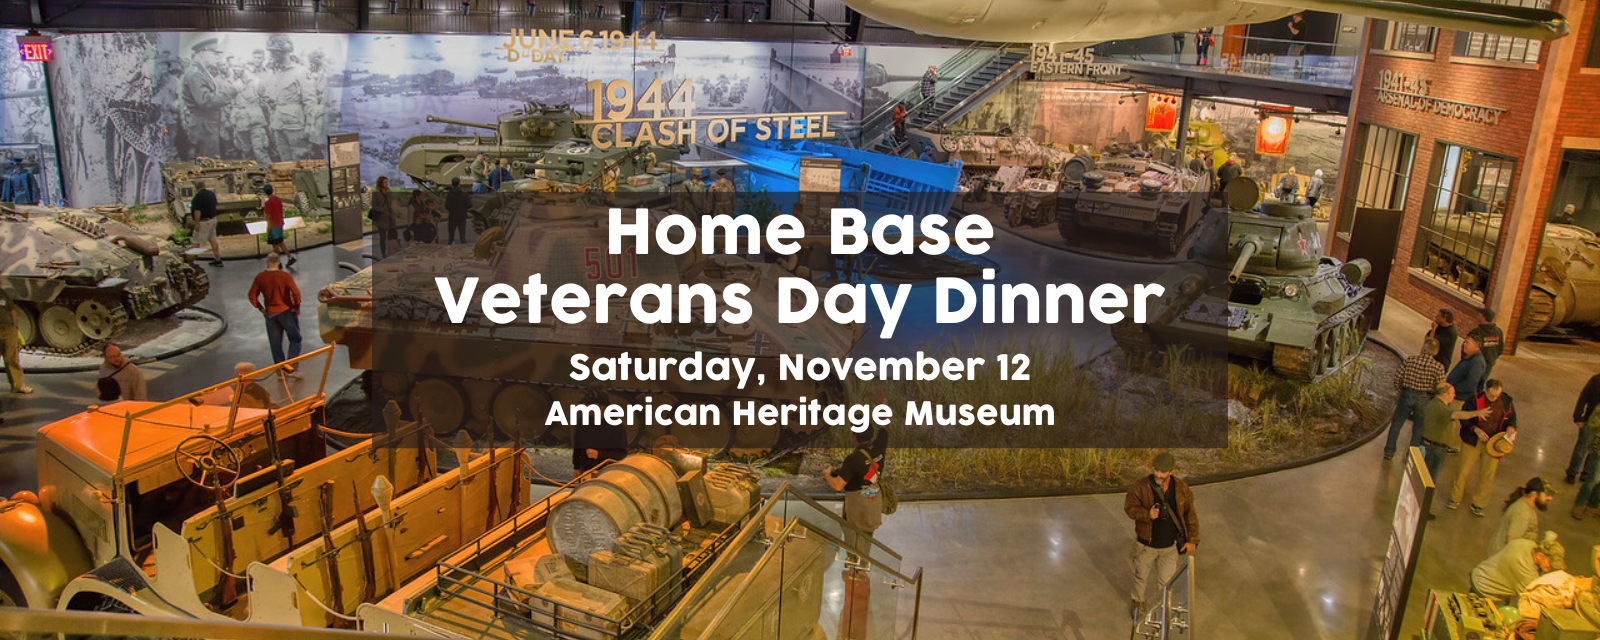 Home Base Veterans Day Dinner